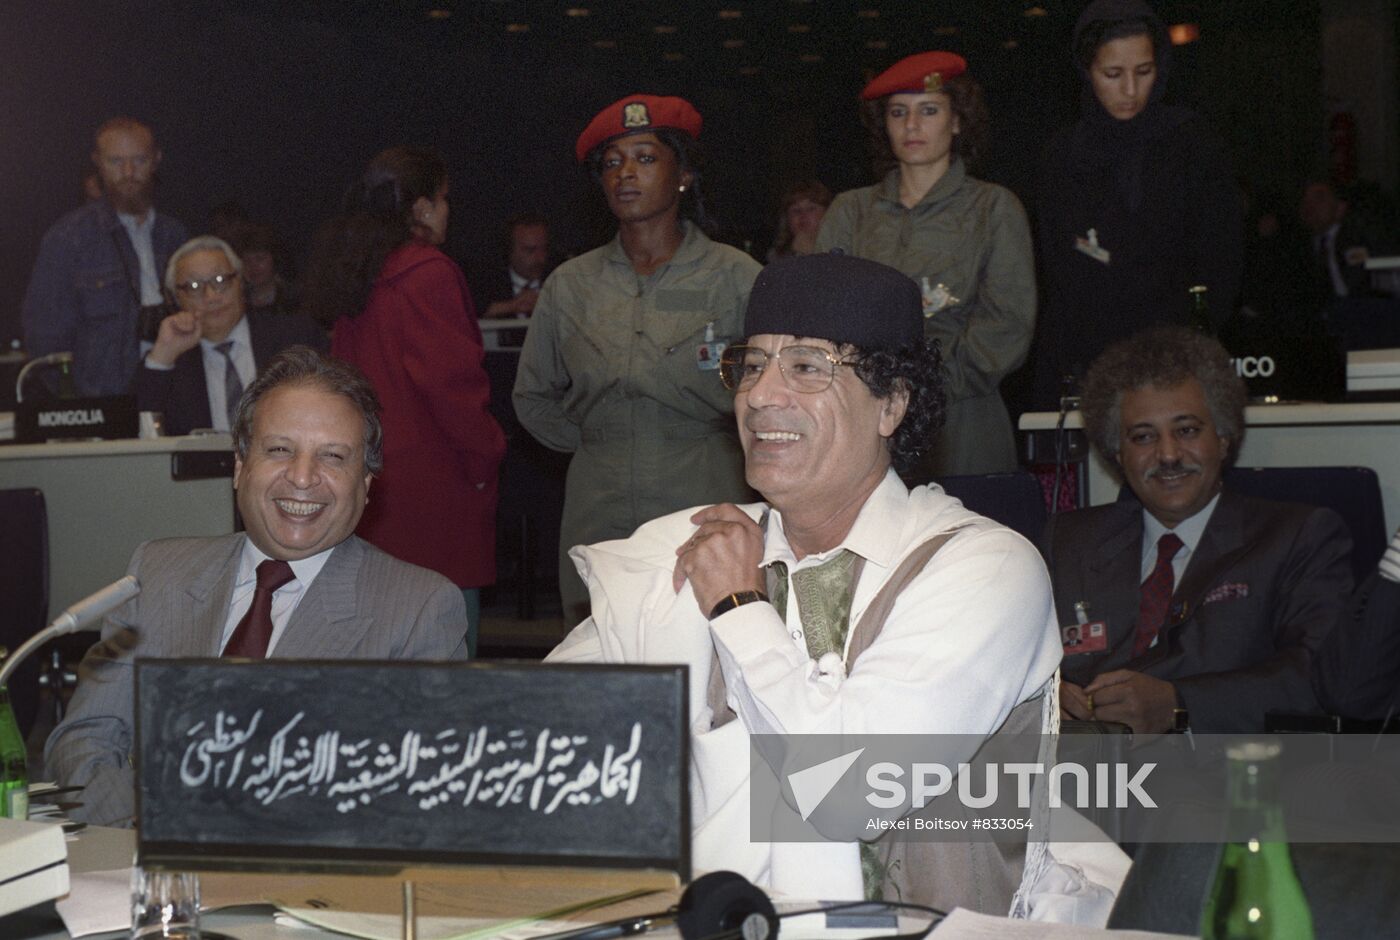 Leader of Libyan Revolution Muammar al-Gaddafi